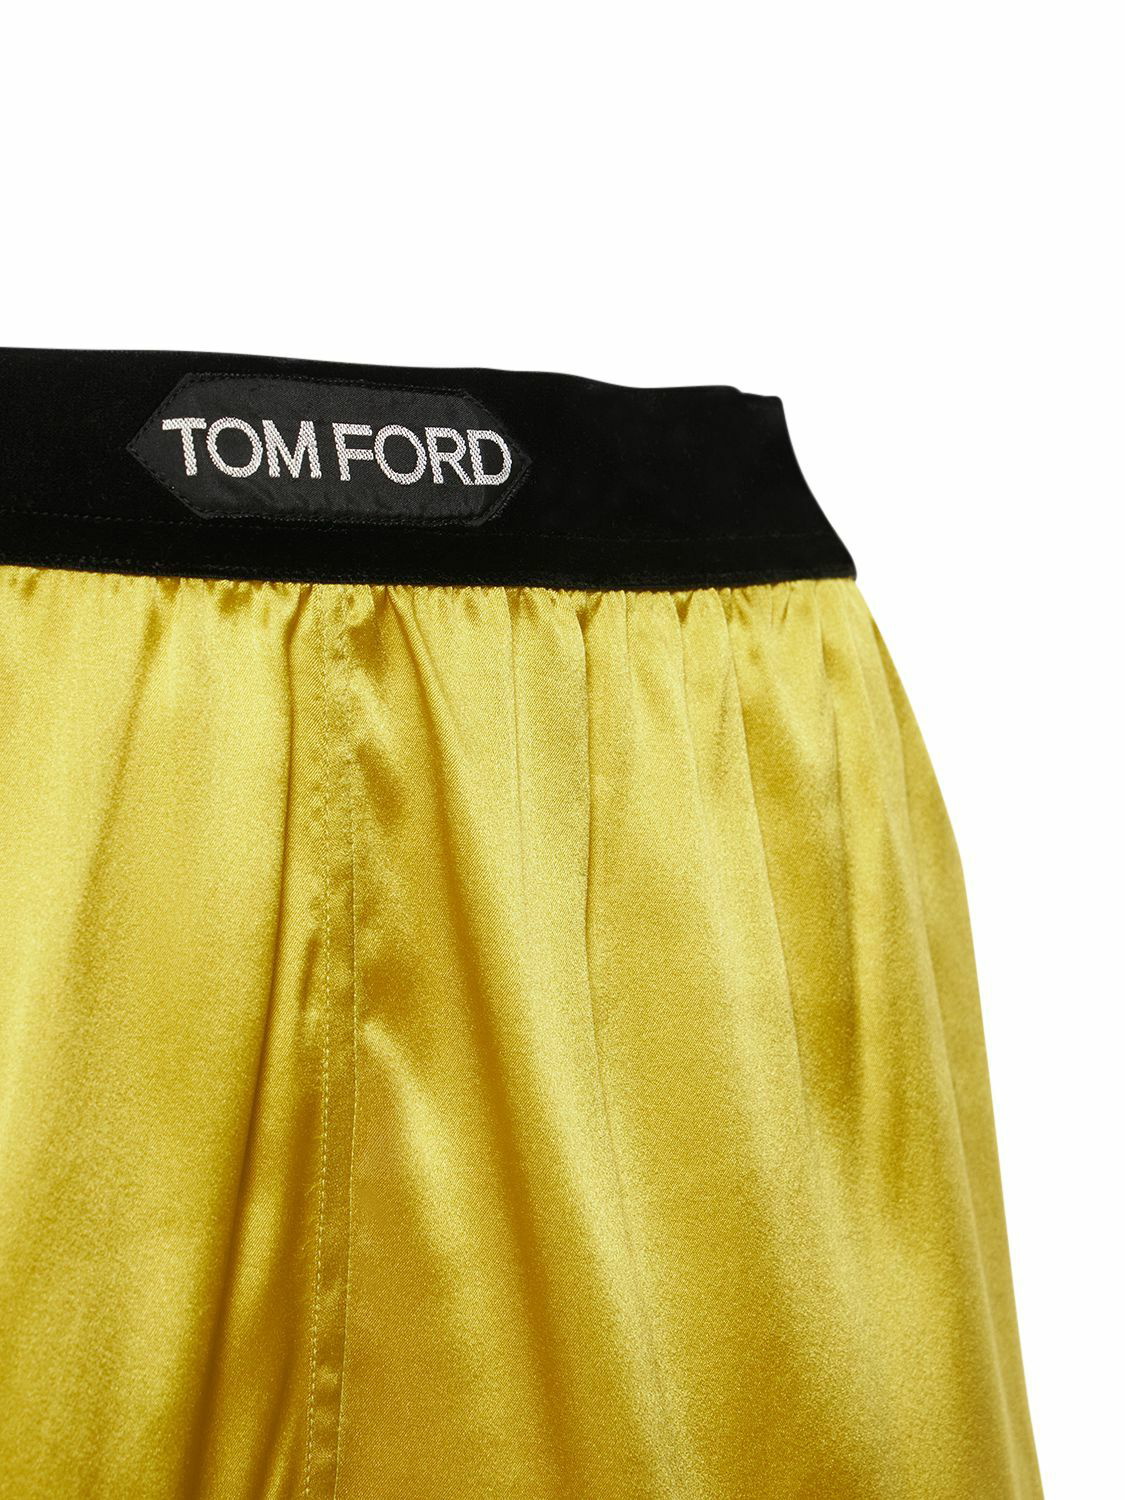 TOM FORD, Silk Satin Shorts, Women, Tailored Shorts